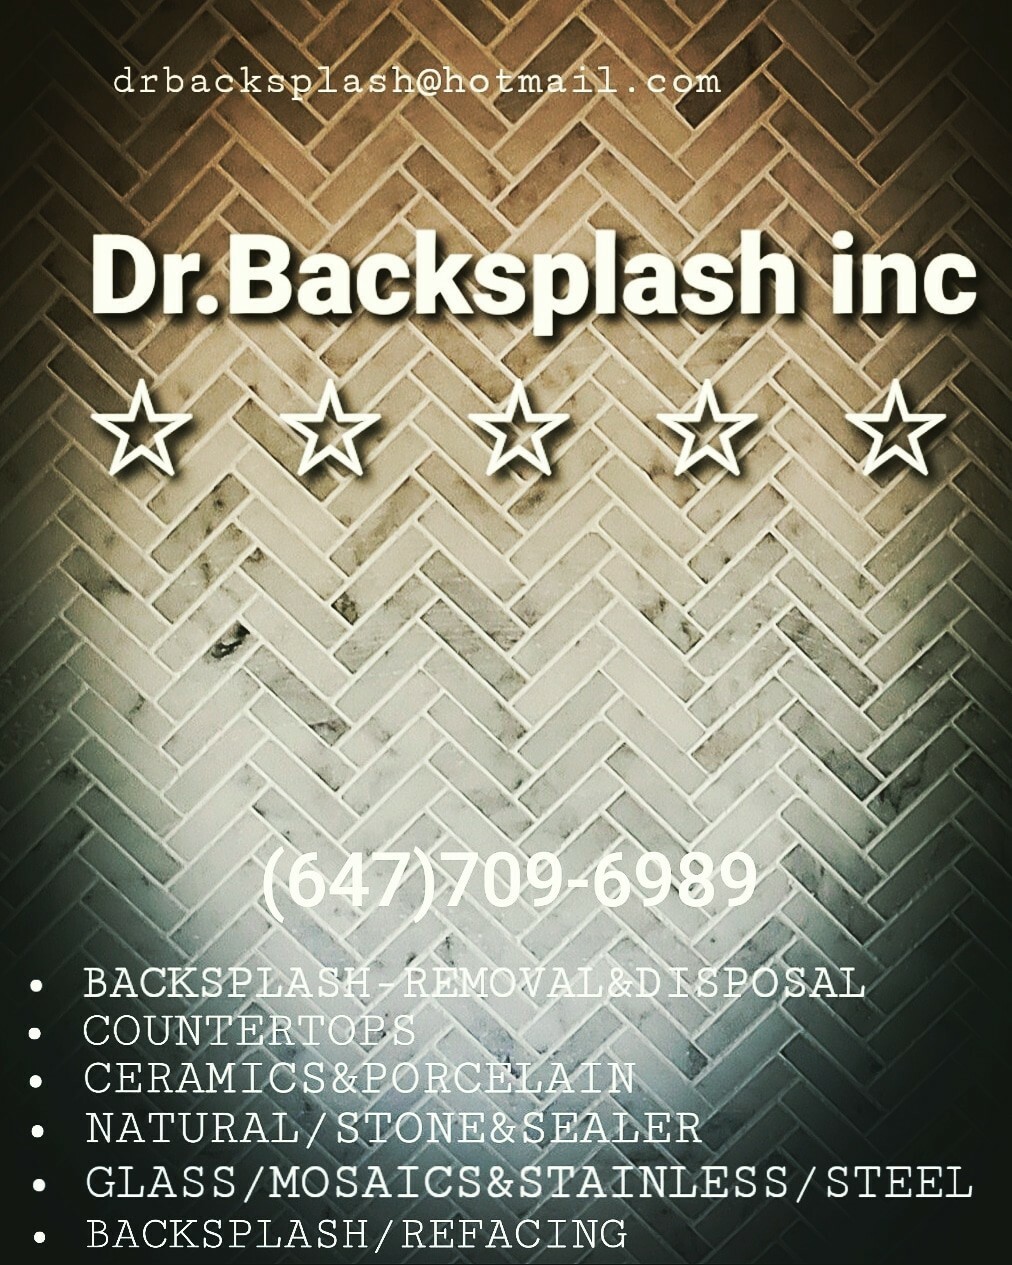 Dr. Backsplash Inc.'s logo